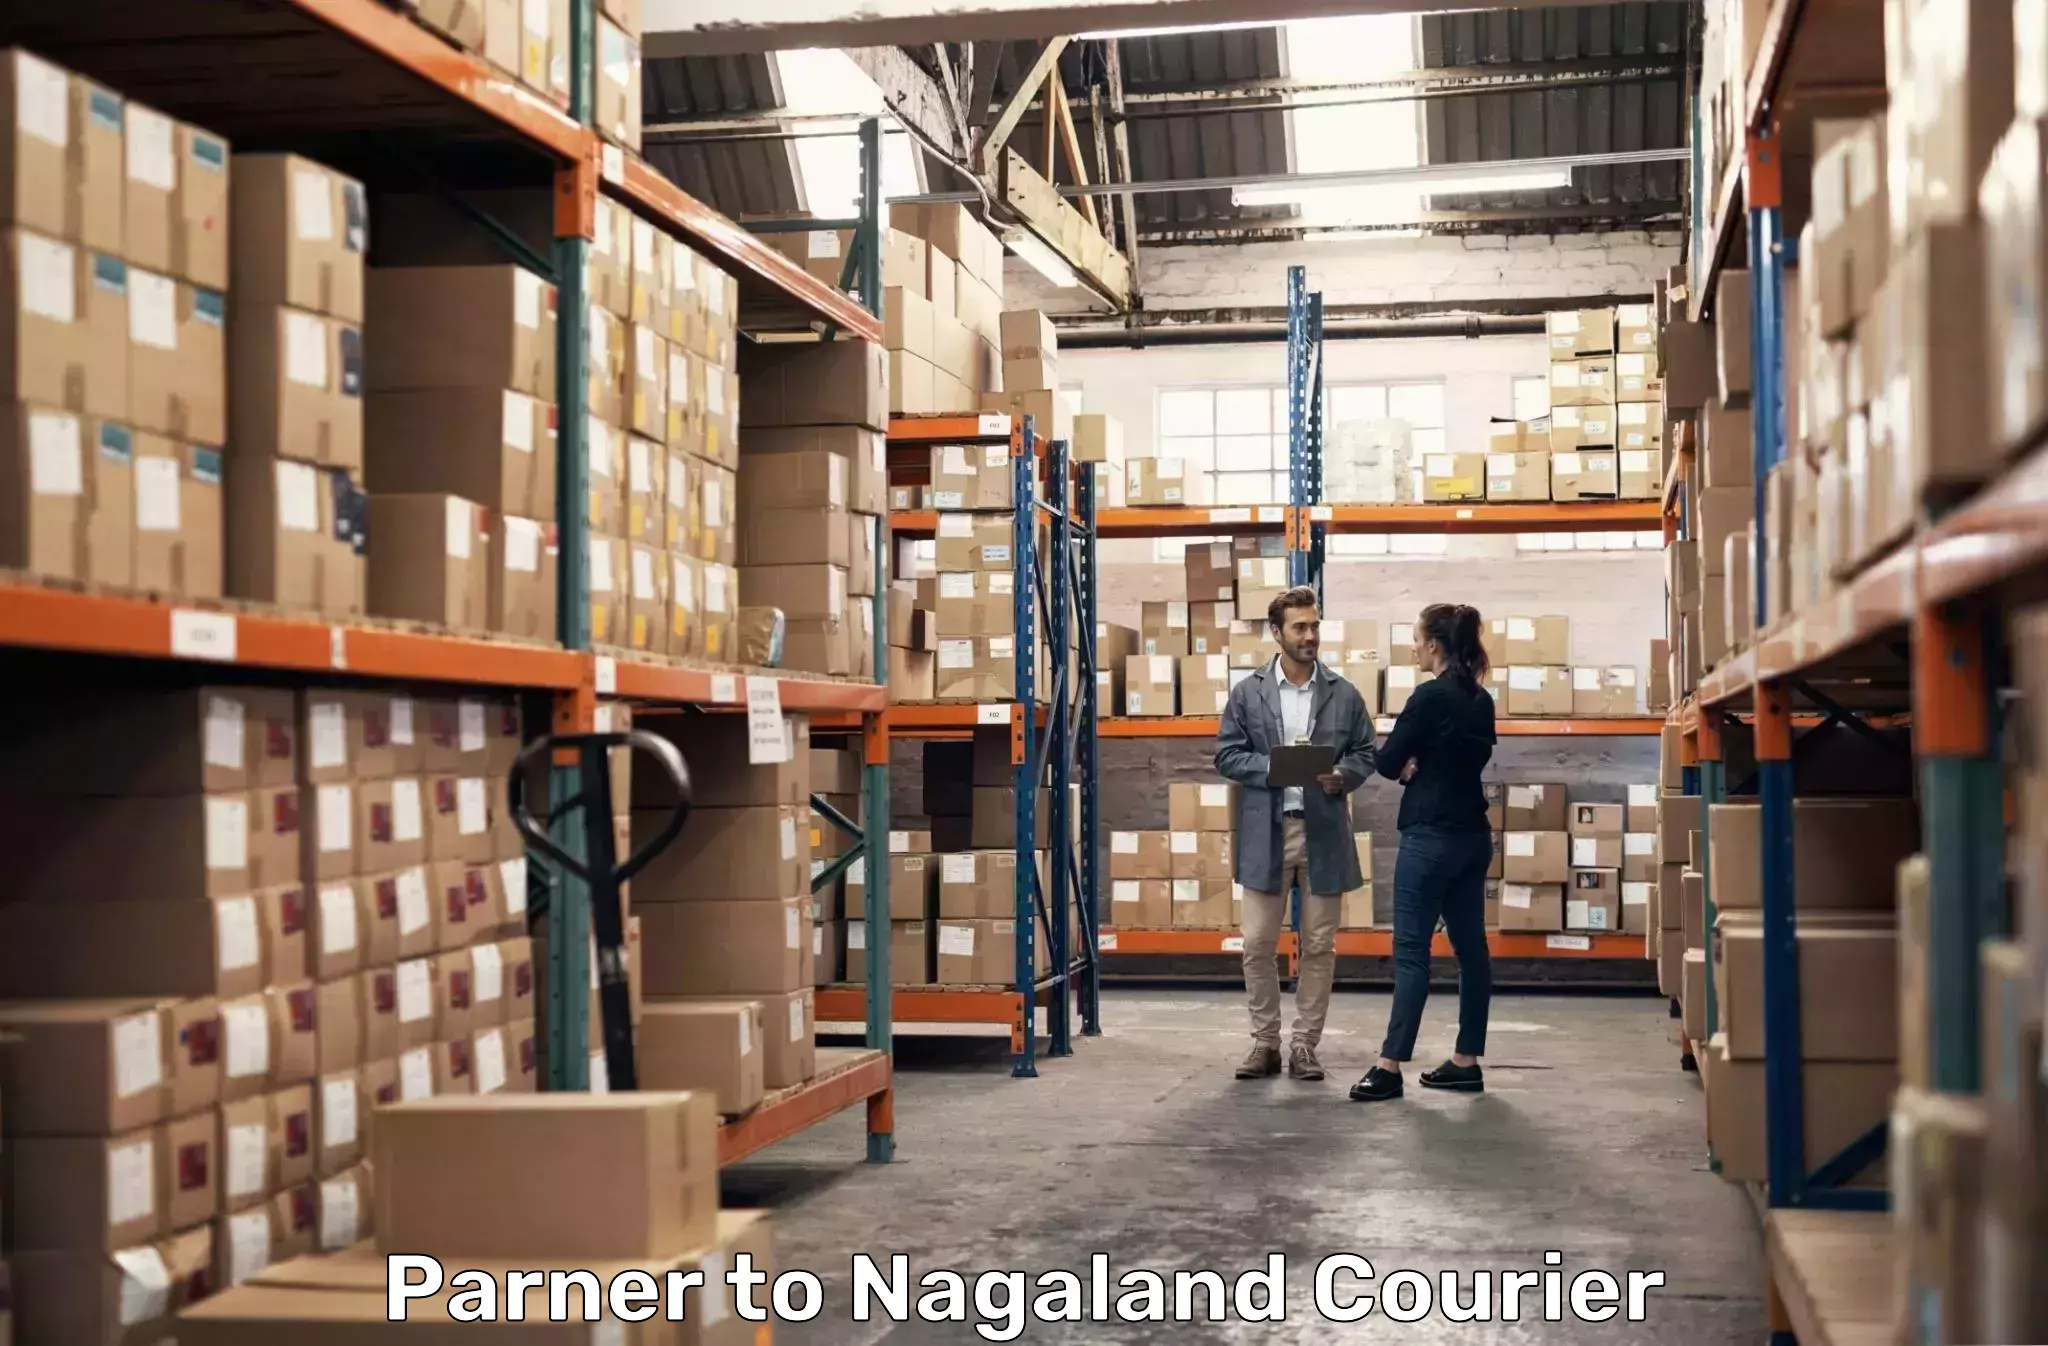 Lightweight parcel options Parner to NIT Nagaland